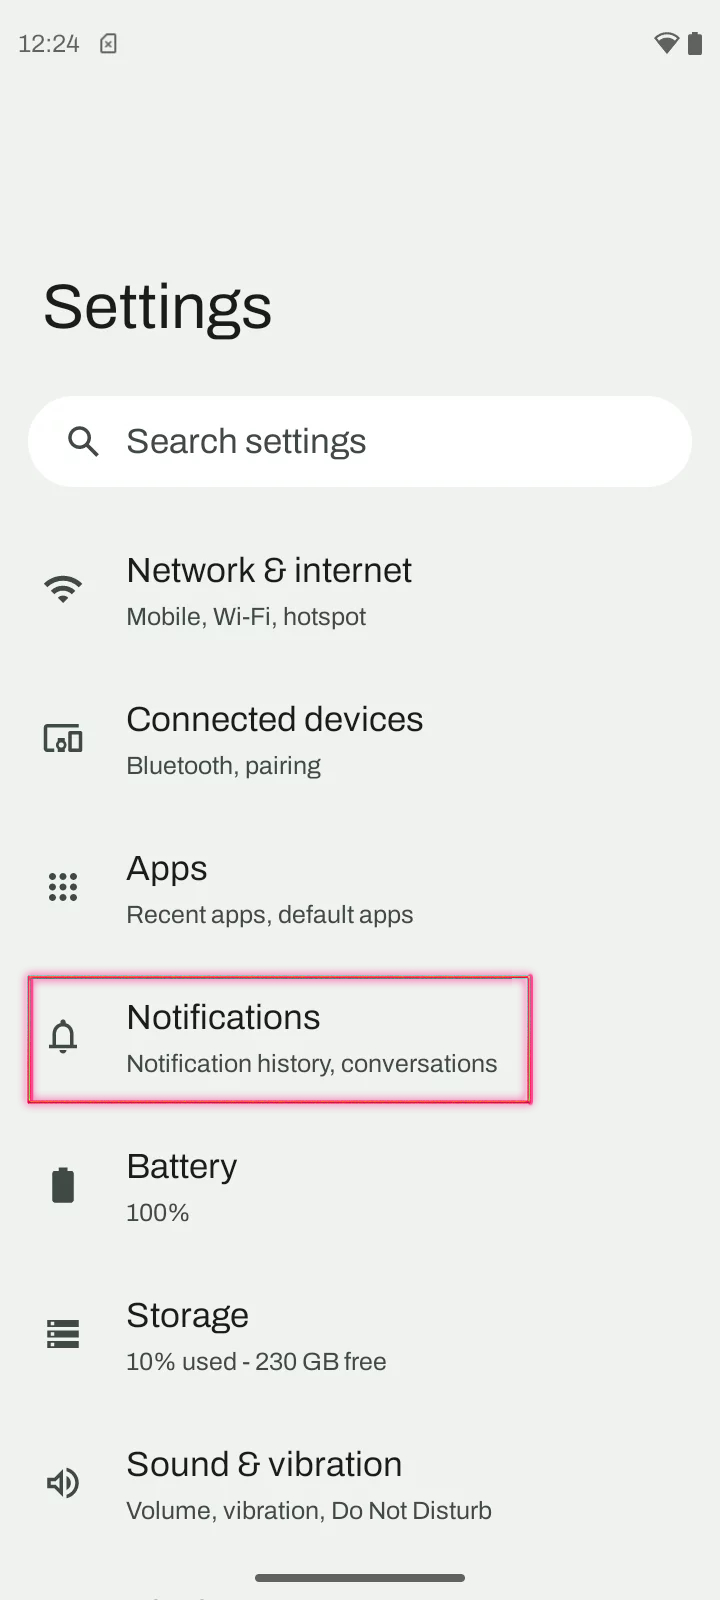 Motorola settings menu